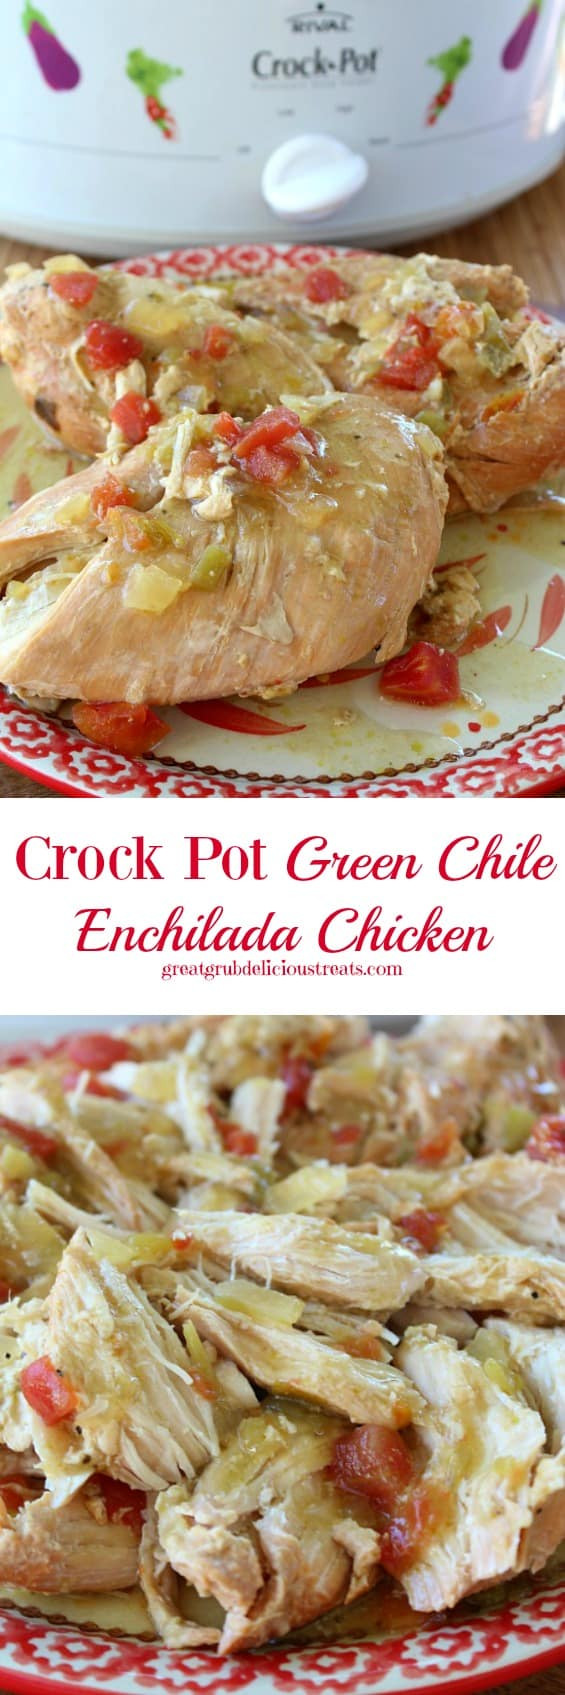 Crockpot Chicken Enchiladas
 Crock Pot Green Chile Enchilada Chicken Great Grub